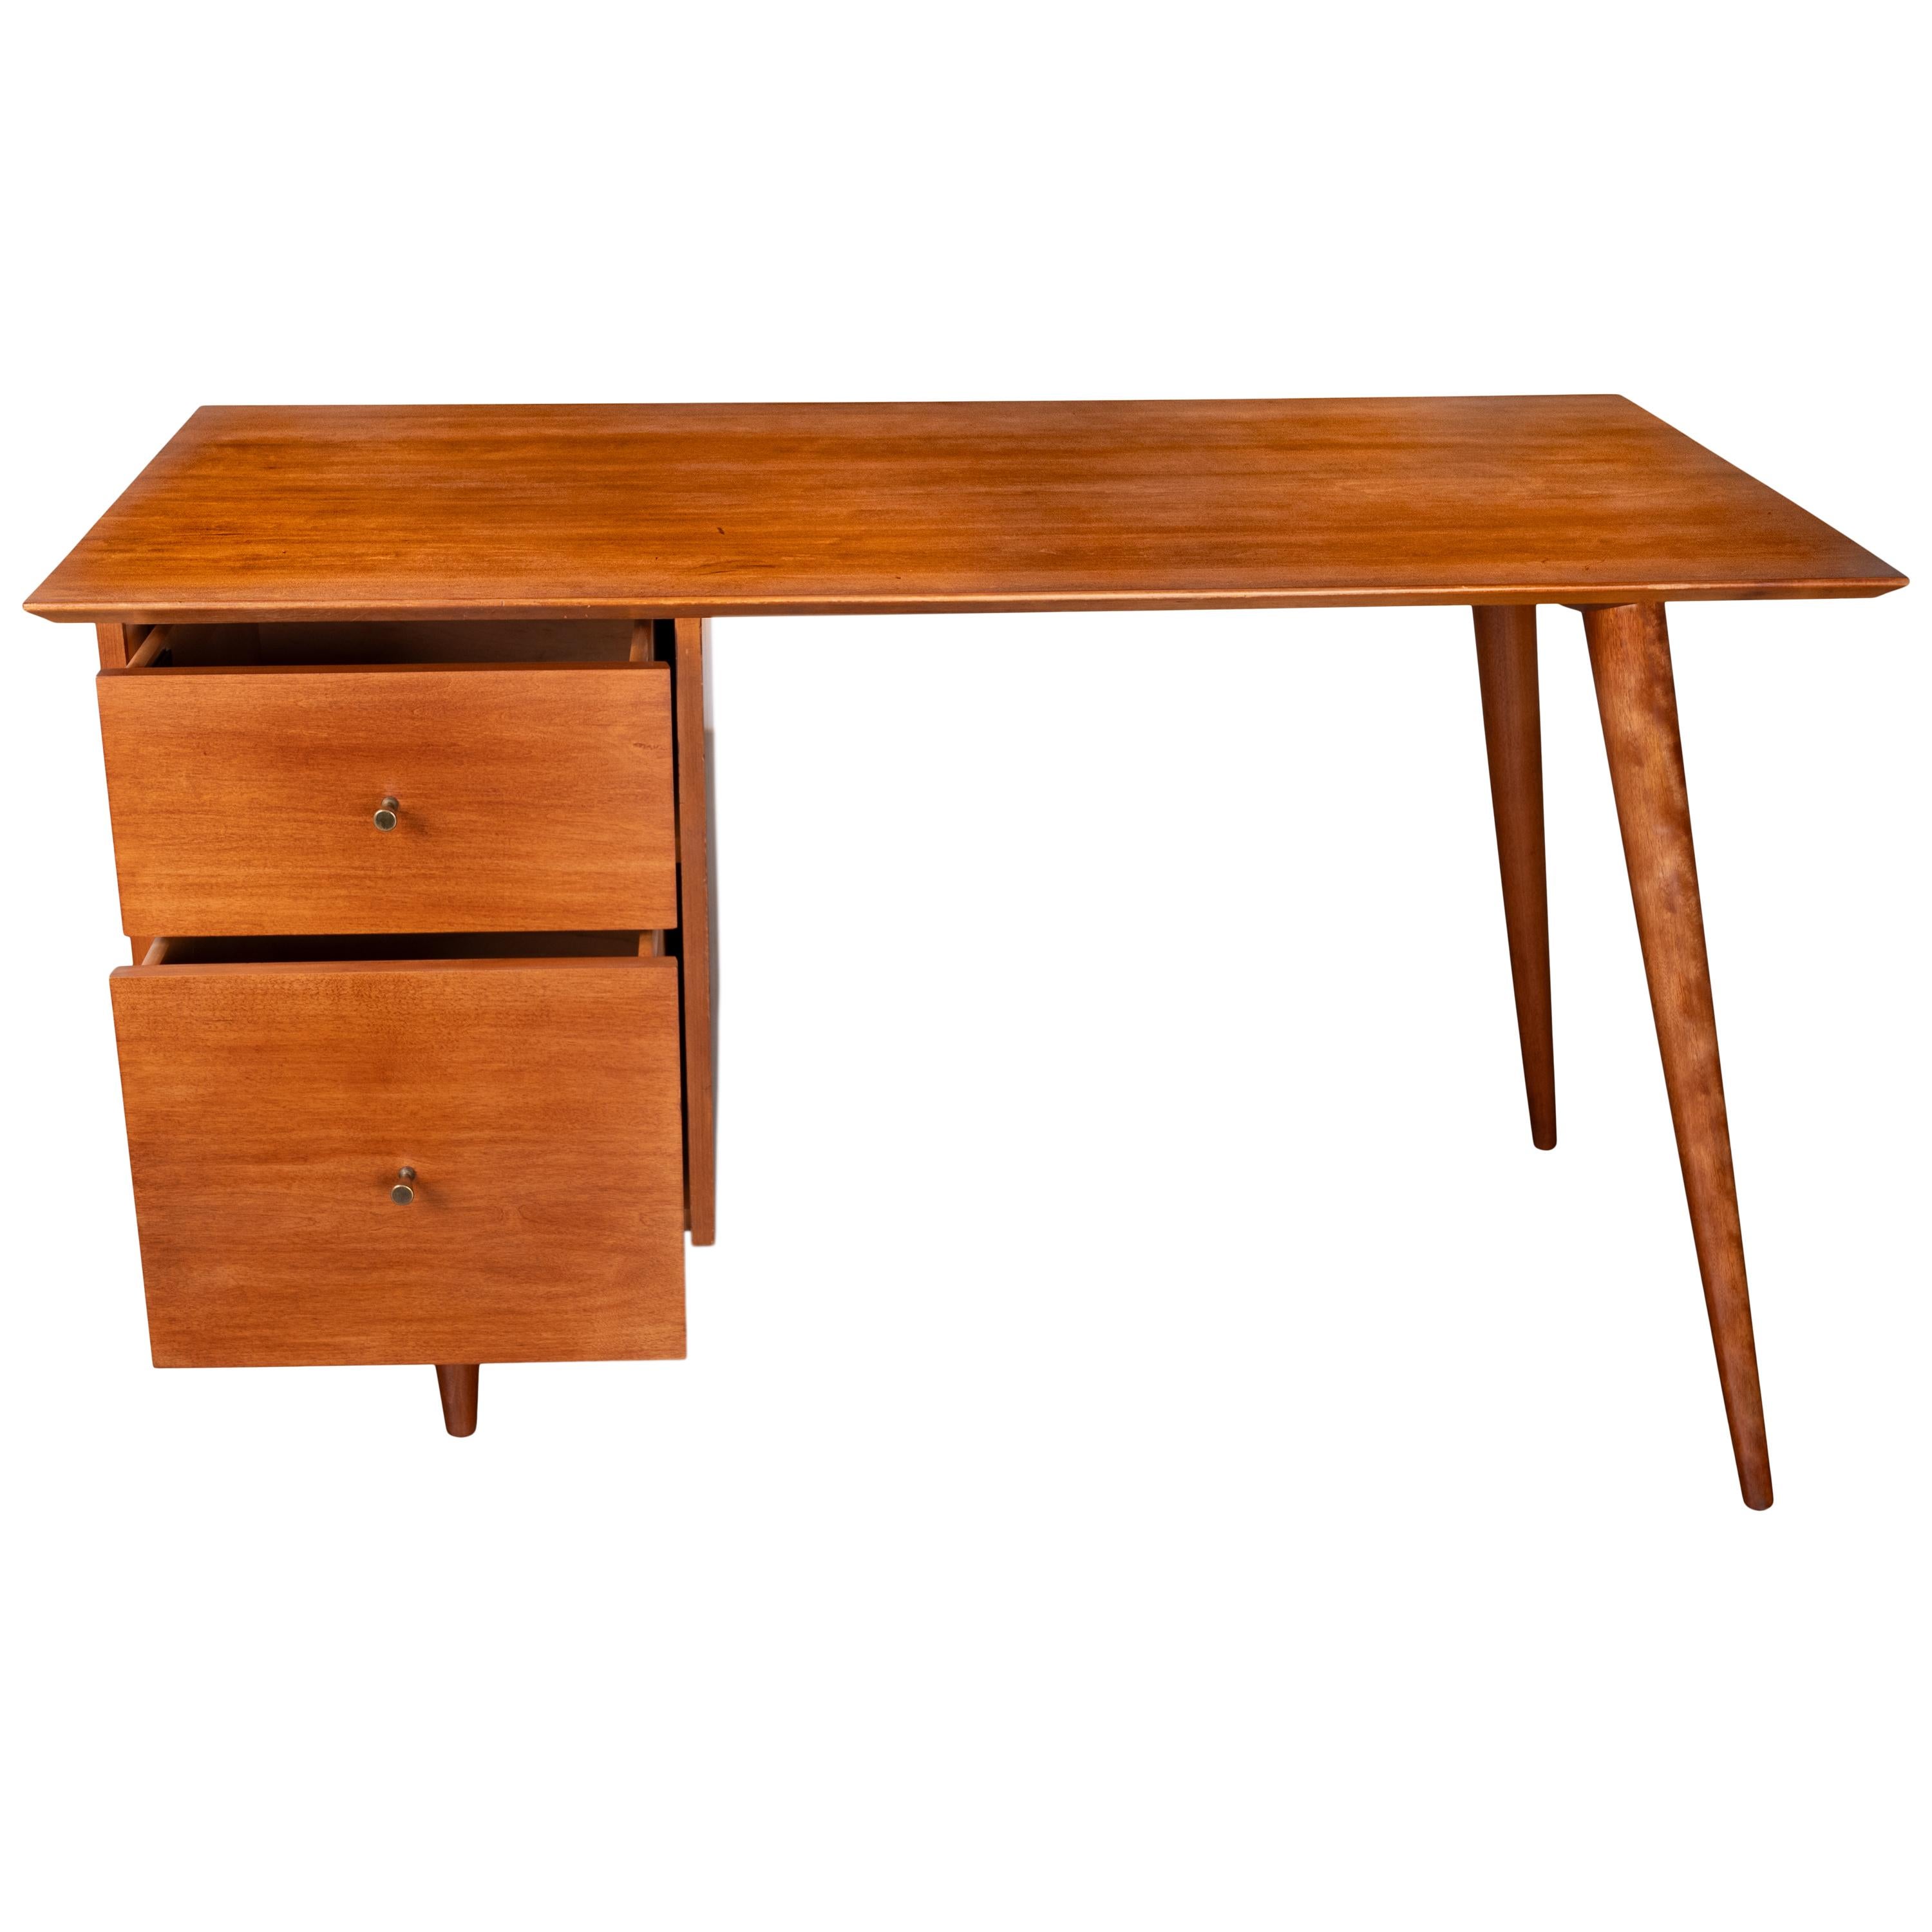 American Mid Century Modern Paul McCobb Planner Group Maple # 1560 Desk 1950's For Sale 3